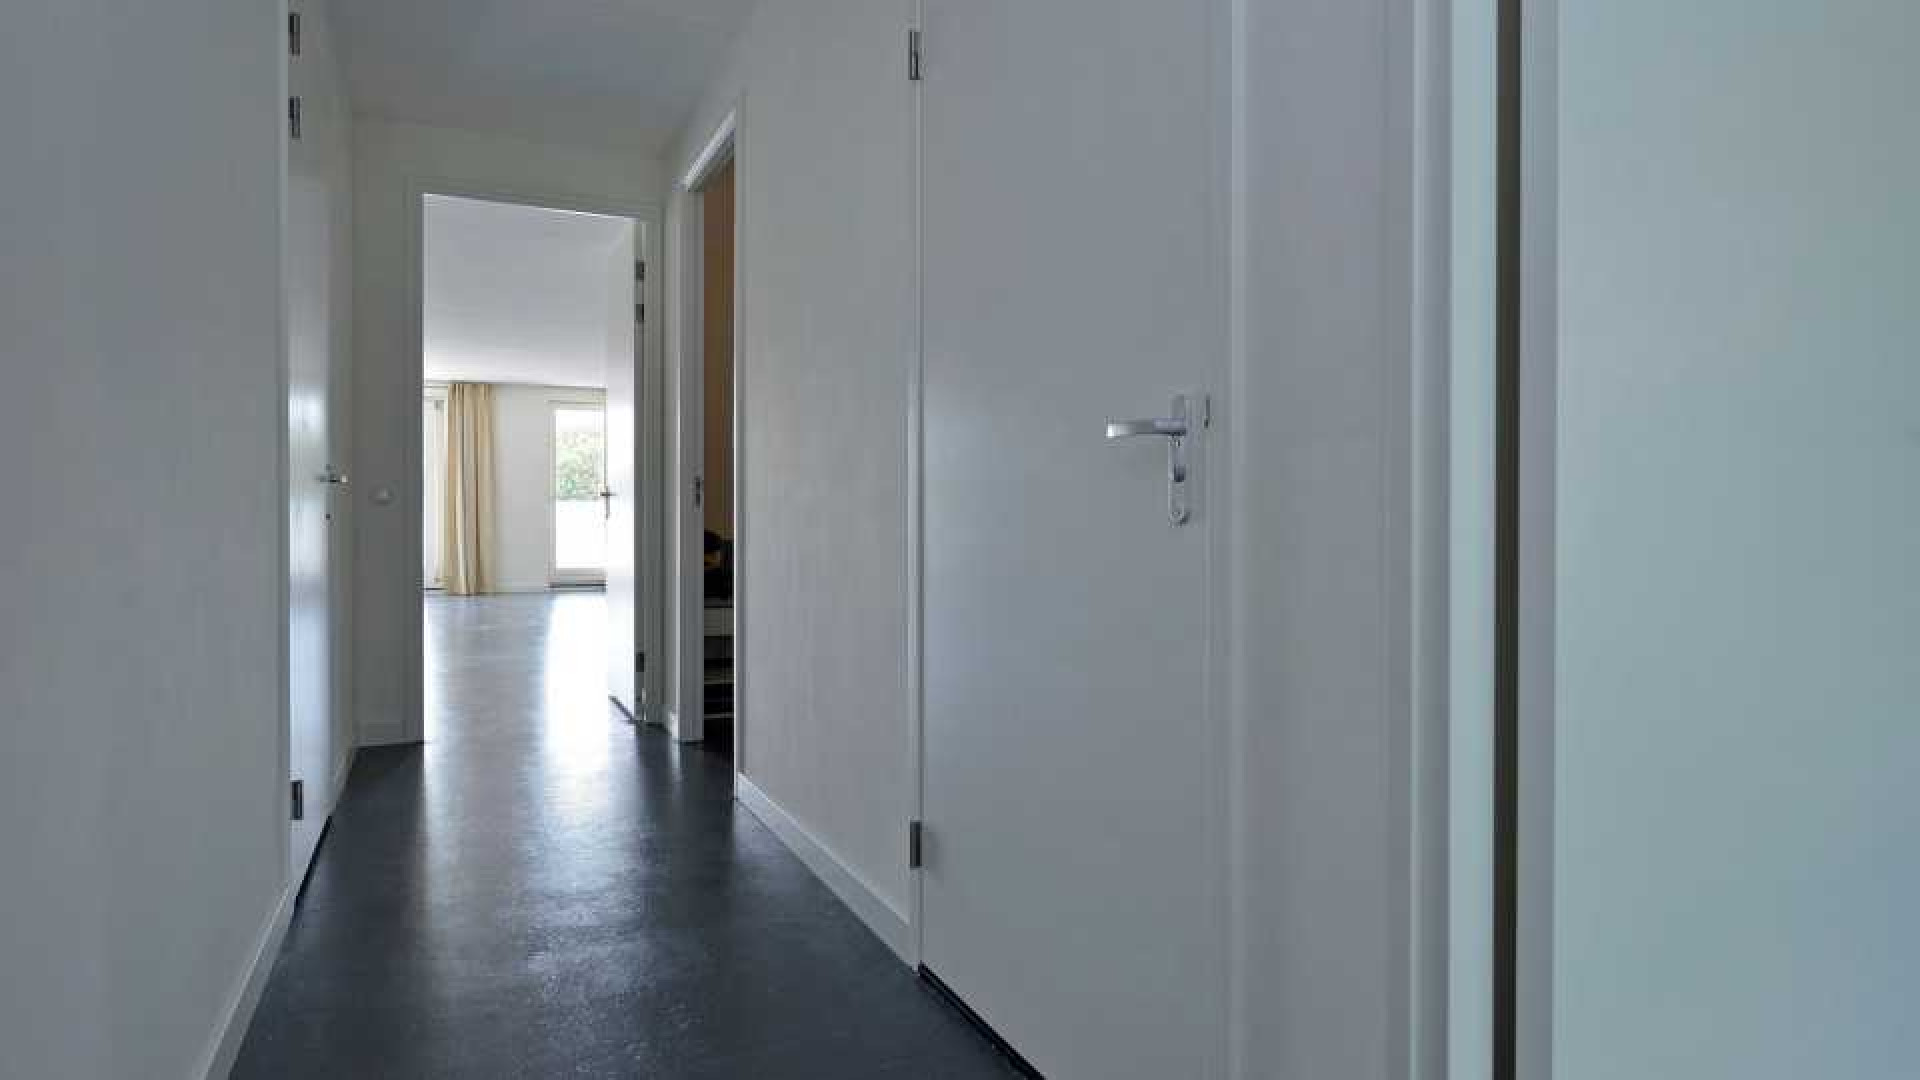 PSV voetballer Steven Bergwijn koopt luxe appartement in Amsterdam